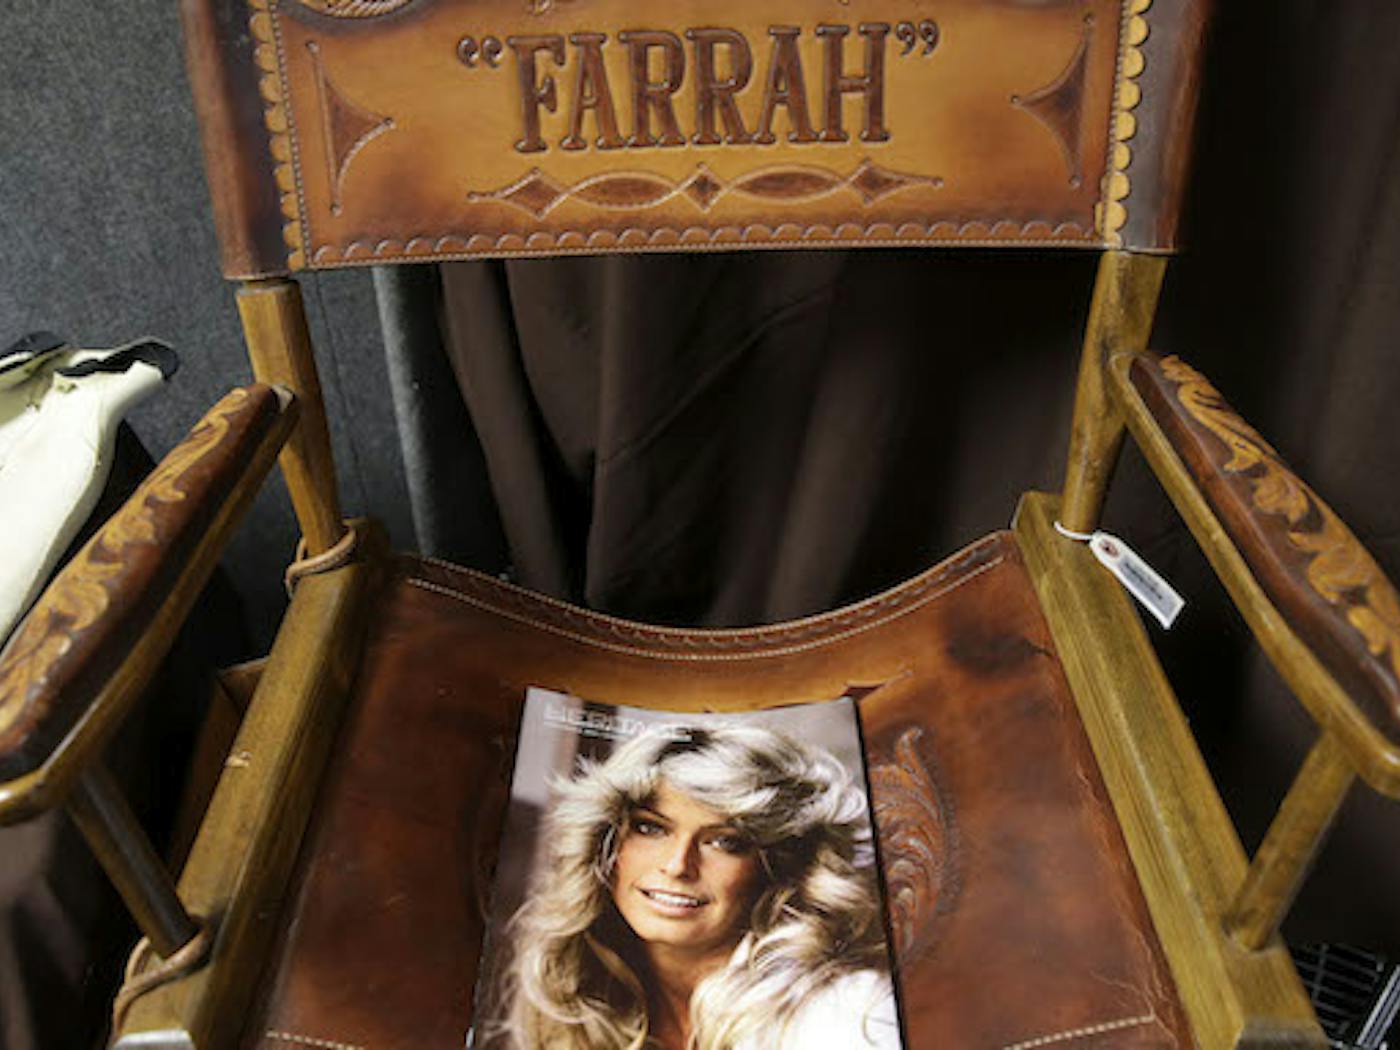 Farrah fawcett gold